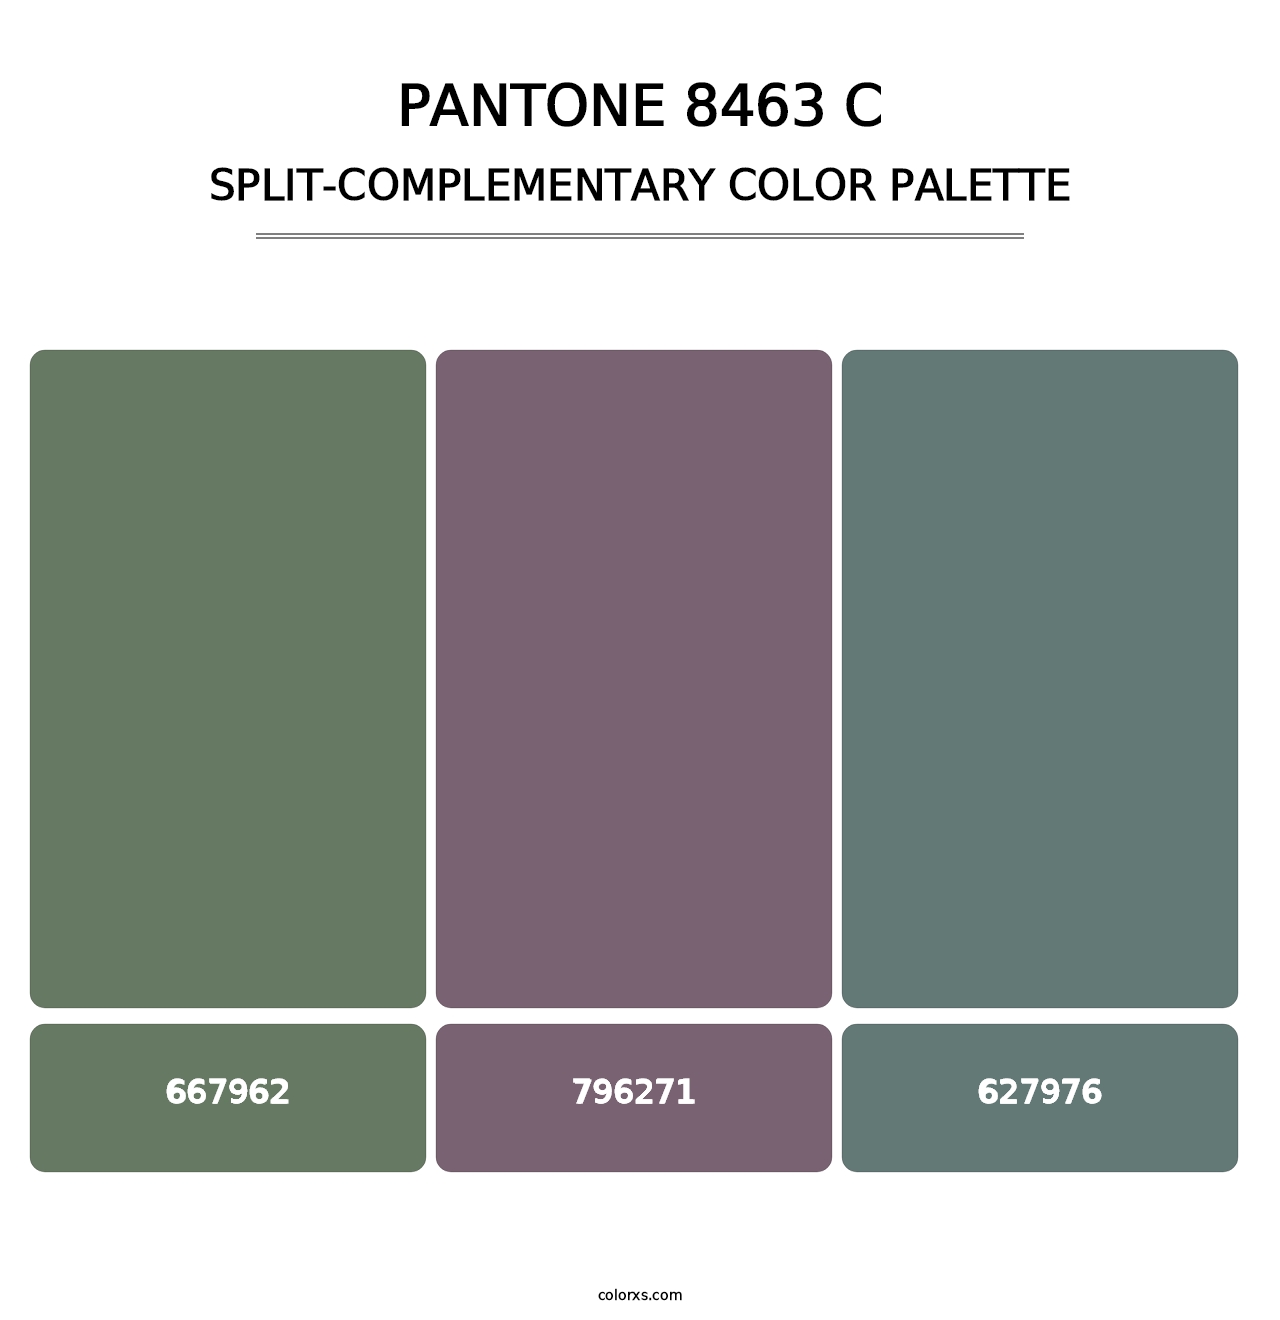 PANTONE 8463 C - Split-Complementary Color Palette